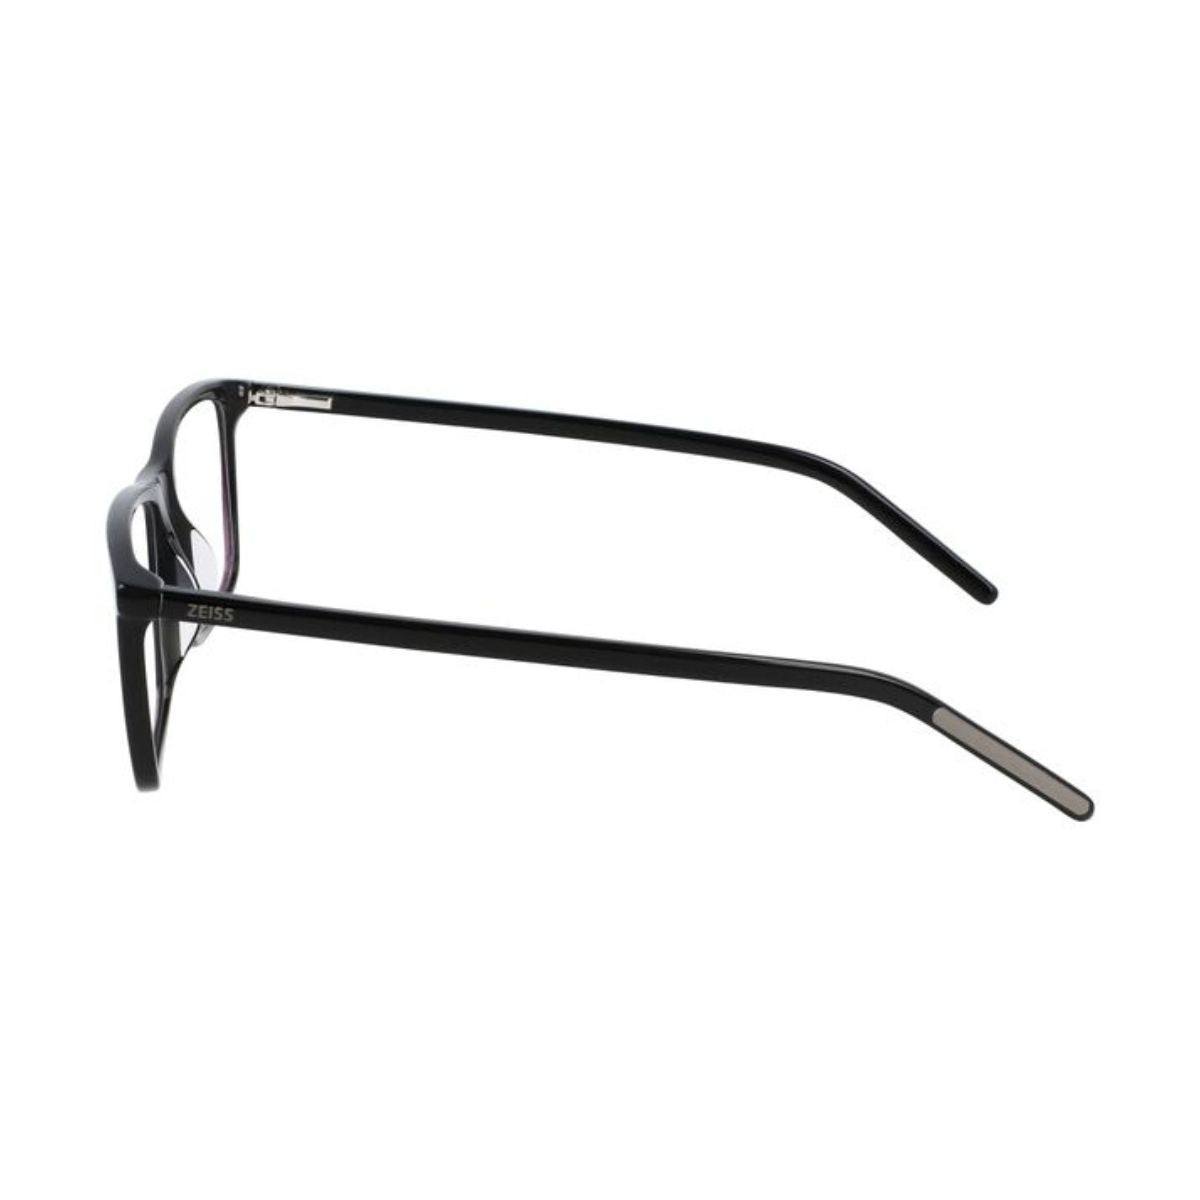 "Zeiss 22500 001 optical eyewear frame for men's at optorium"